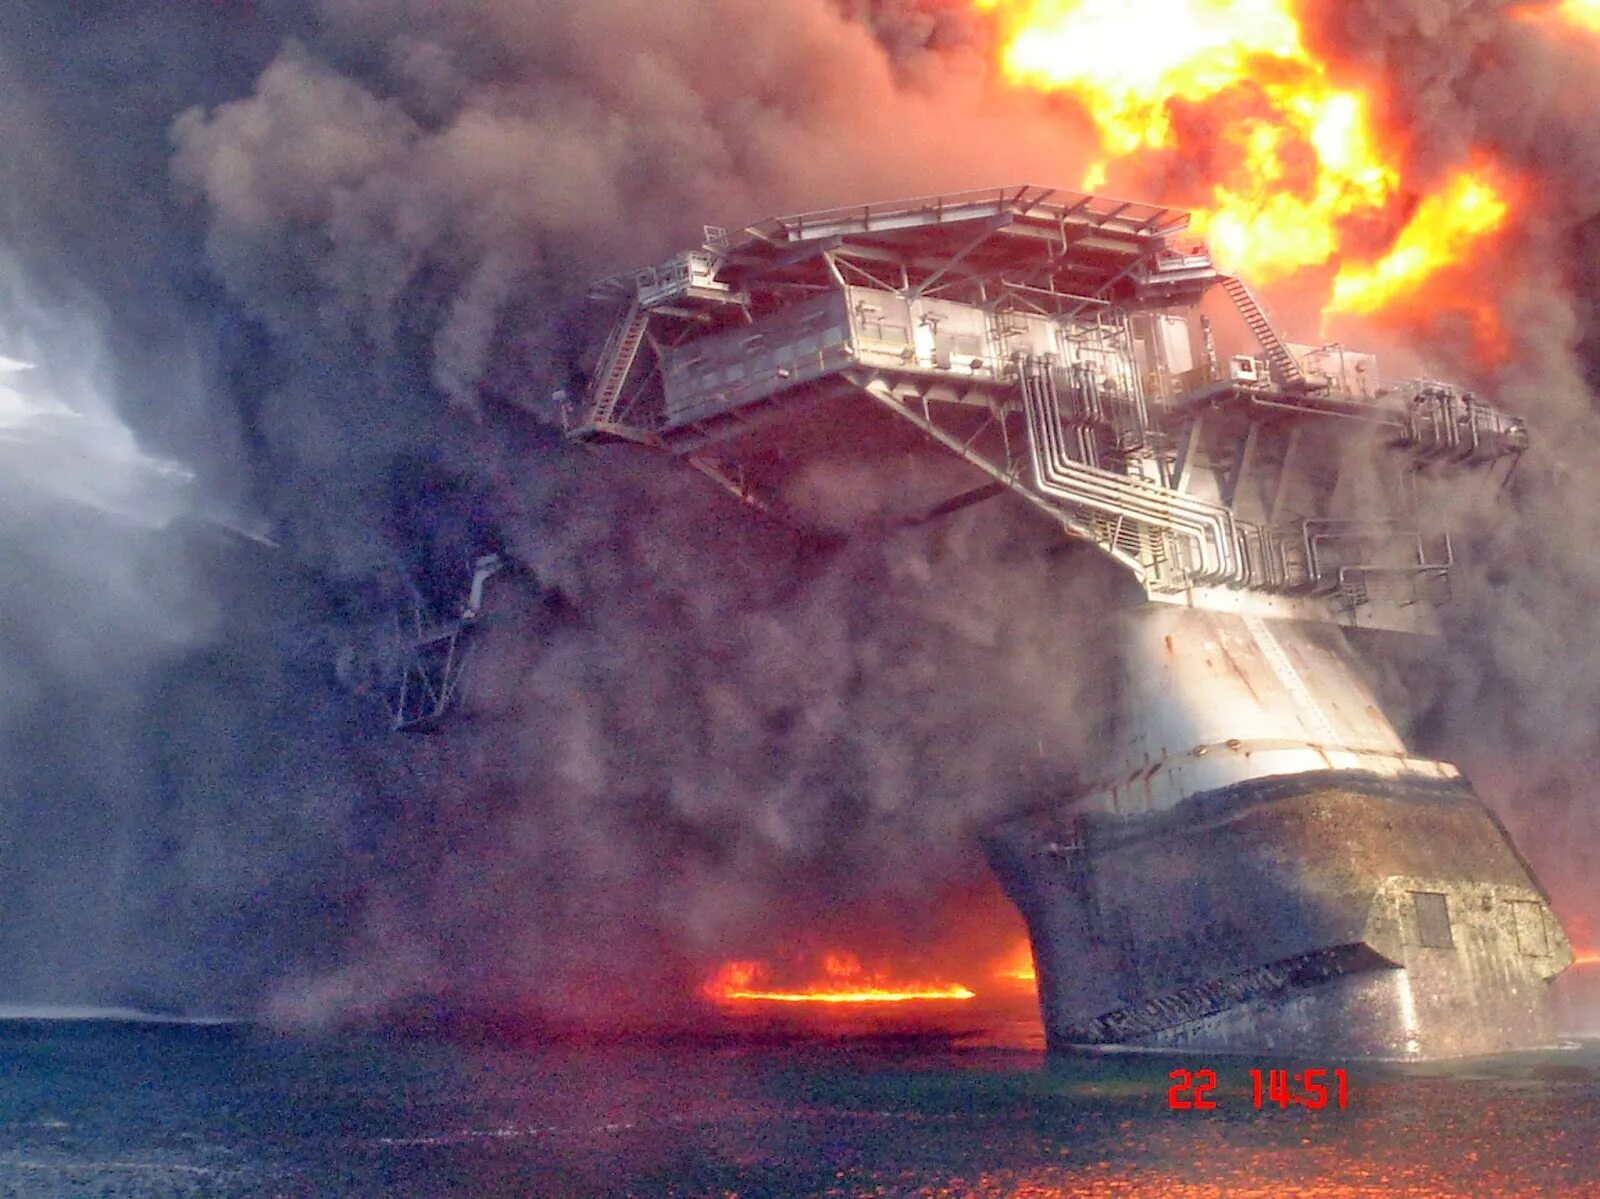 Взрыв на нефтяной платформе в мексиканском заливе 2010. Взрыв платформы Deepwater Horizon. Взрыв нефтяной платформы Deepwater Horizon в мексиканском заливе 2010. Взрыв нефтяной платформы Deepwater Horizon - 20 апреля 2010 года. Разрушаем океан